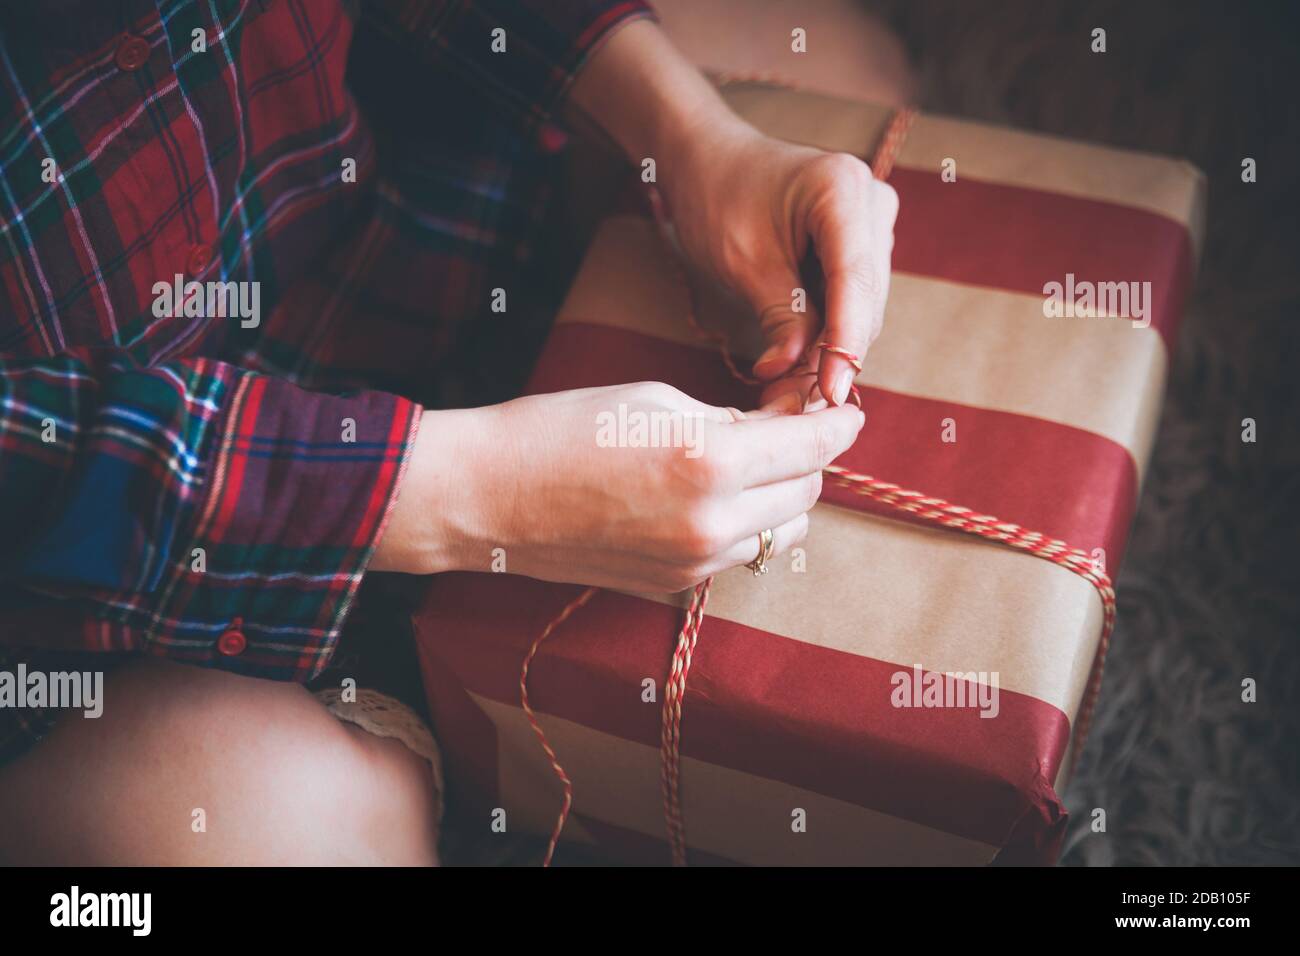 Frau Verpackung Weihnachtsgeschenke sitzen auf dem Boden in einem roten karierten Hemd. Rustikale Weihnachtsstimmung. Stockfoto